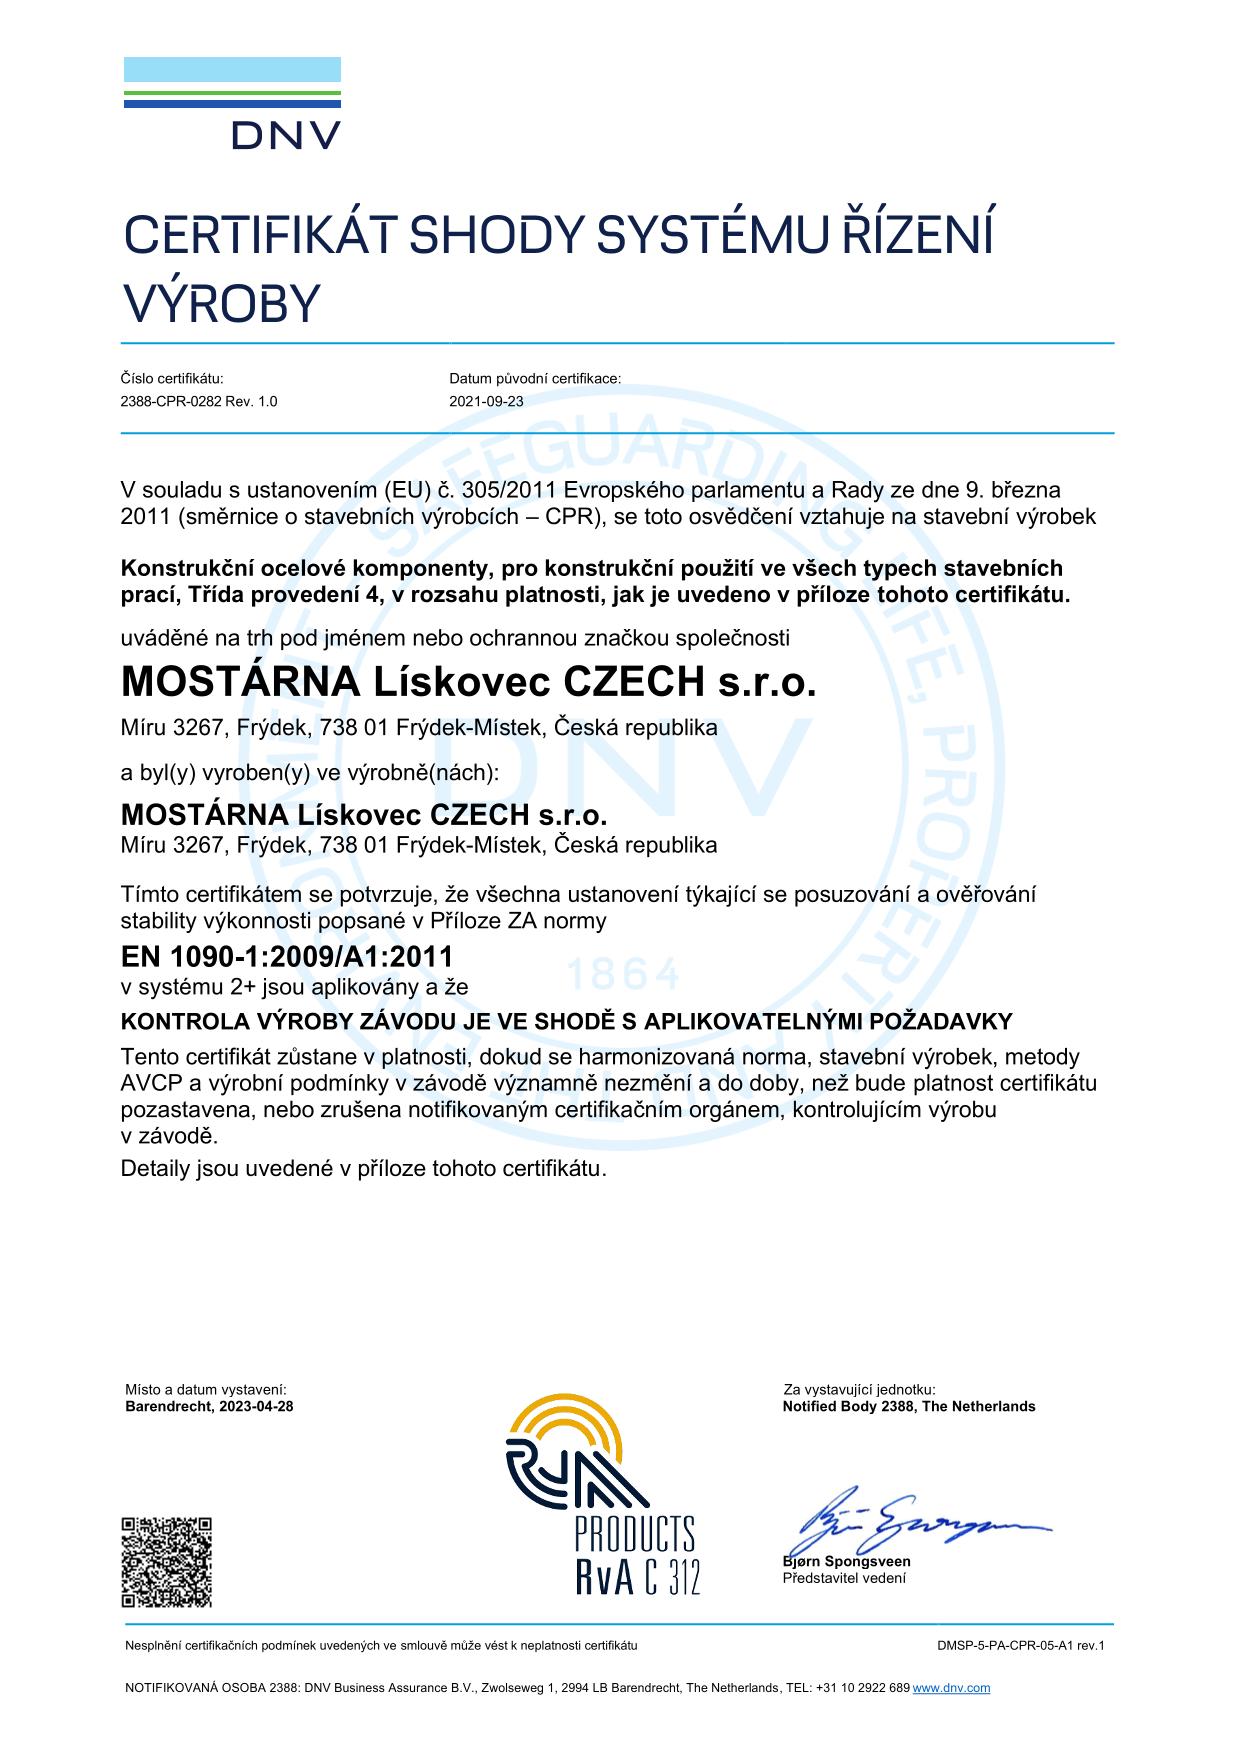 MOSTÁRNA Lískovec CZECH s.r.o. Global Certificate